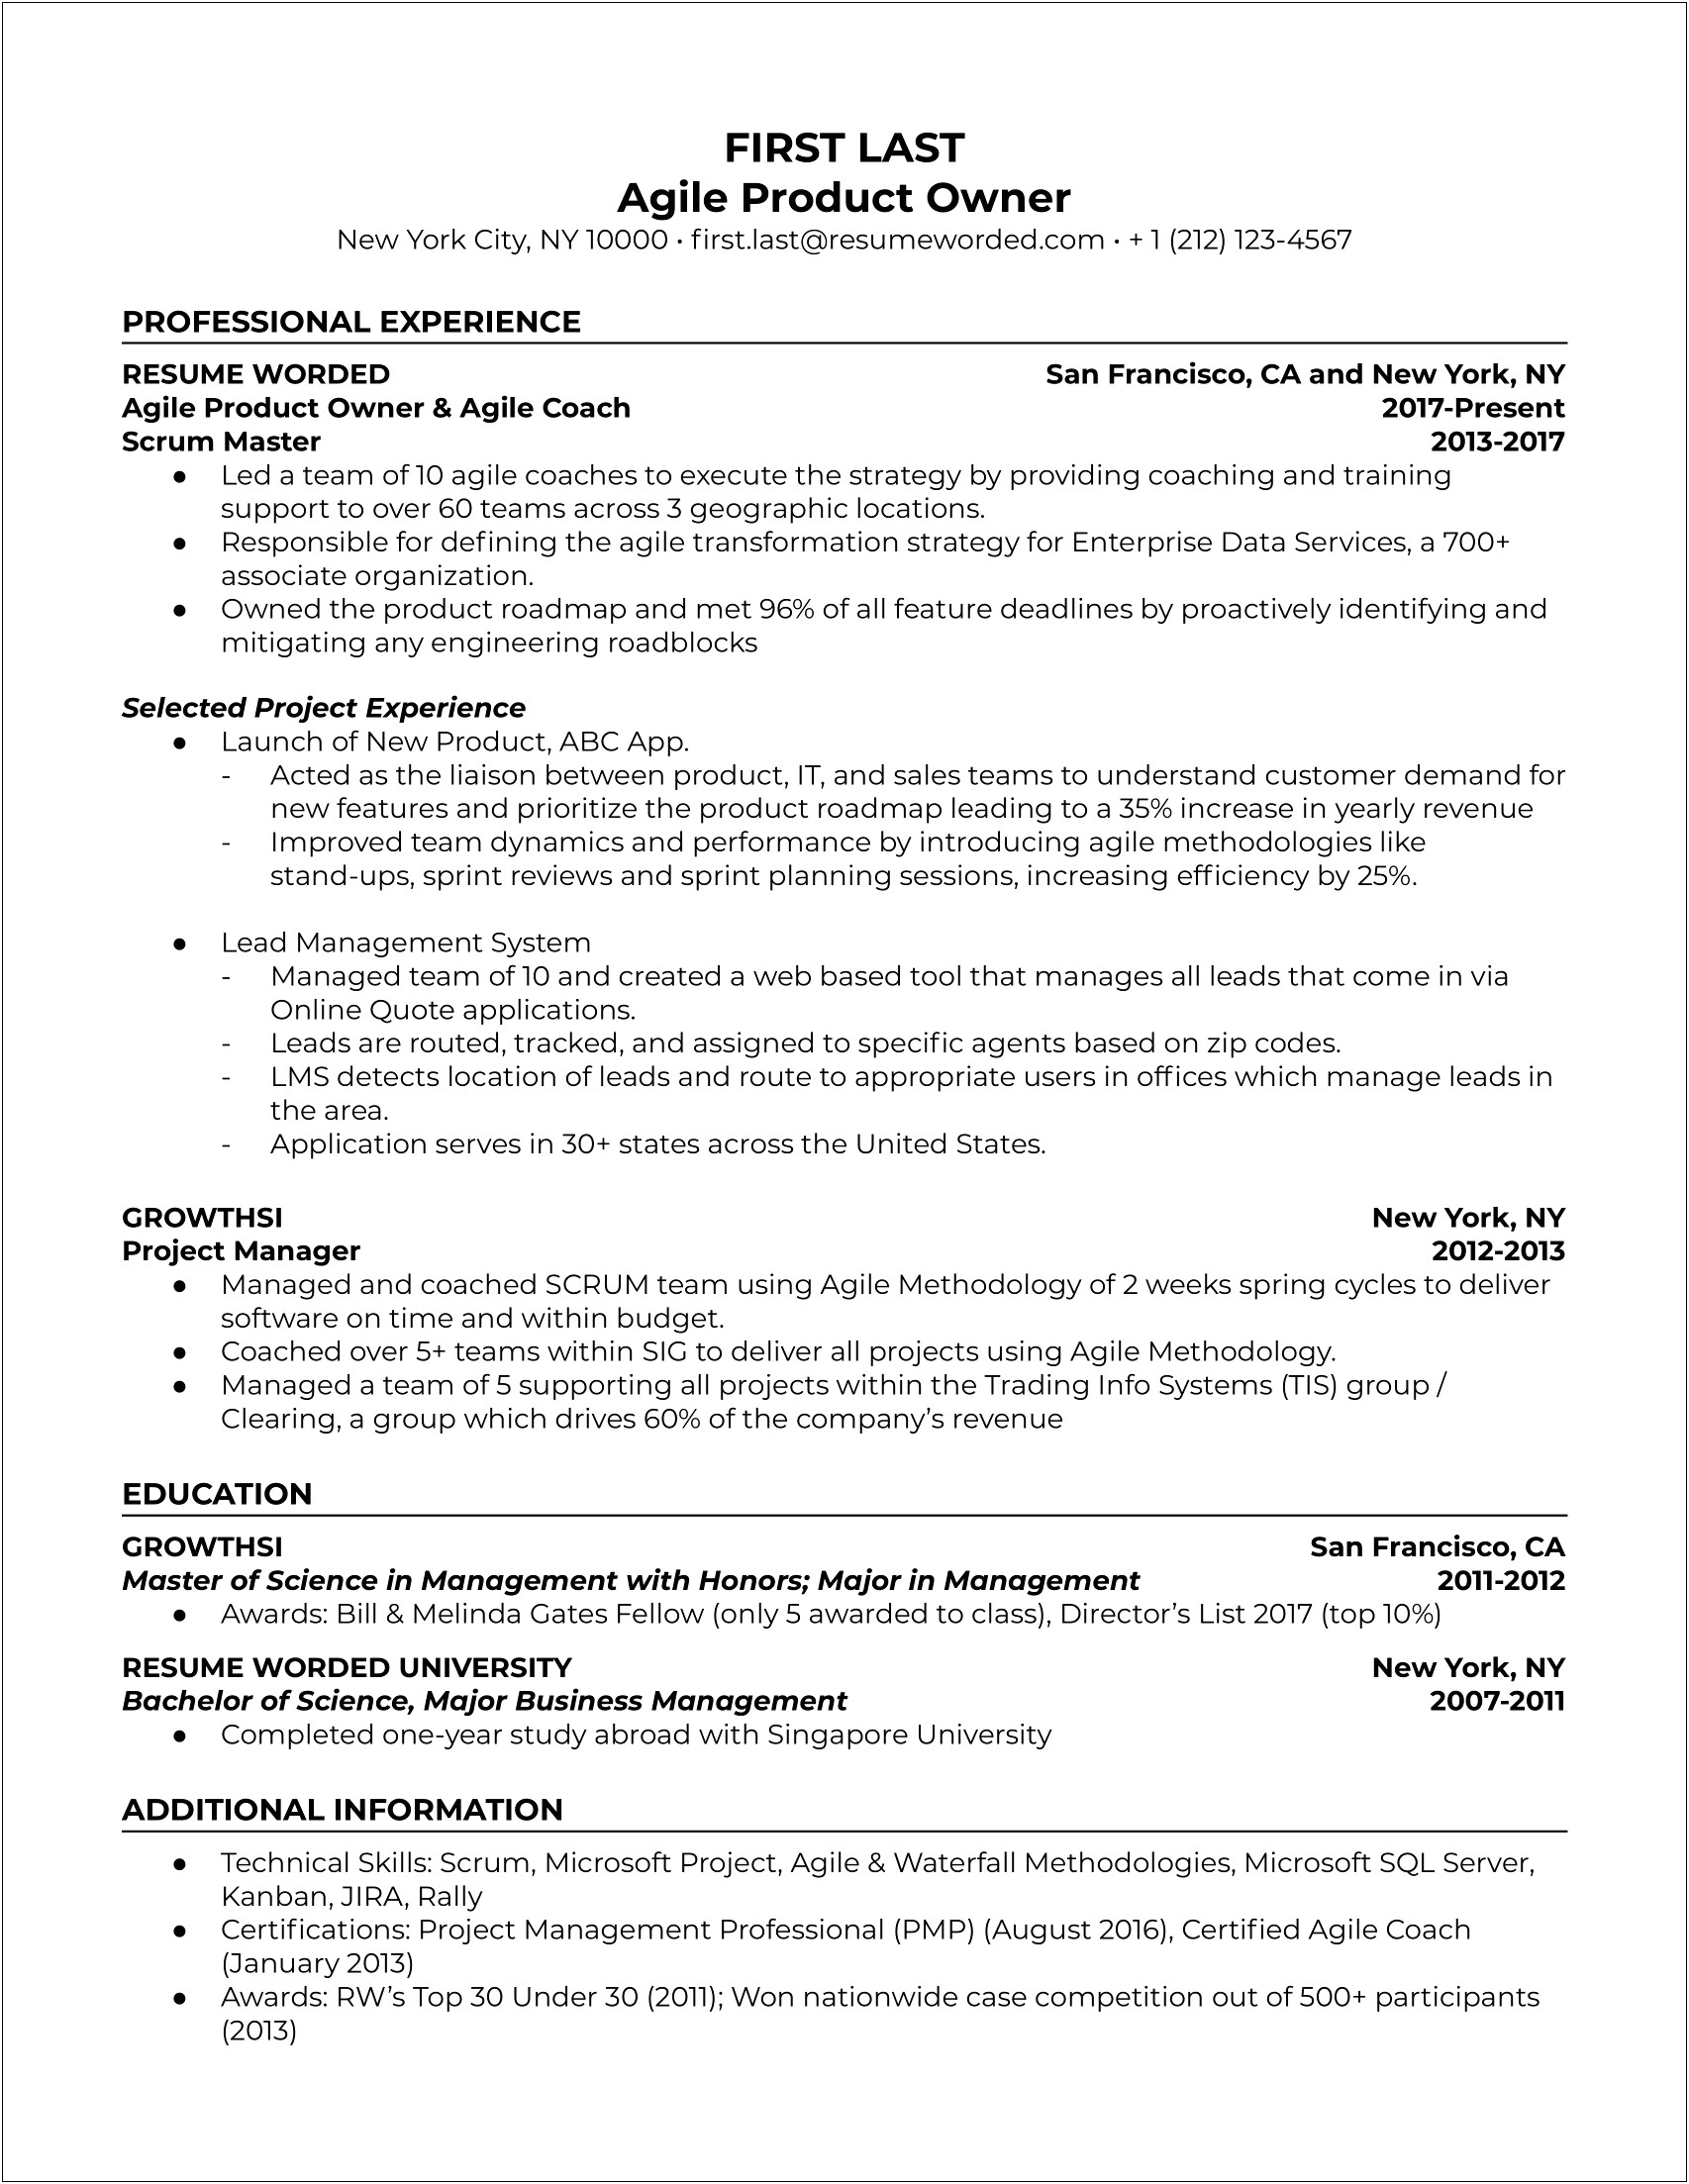 Job Description Of Business Owner On Resume